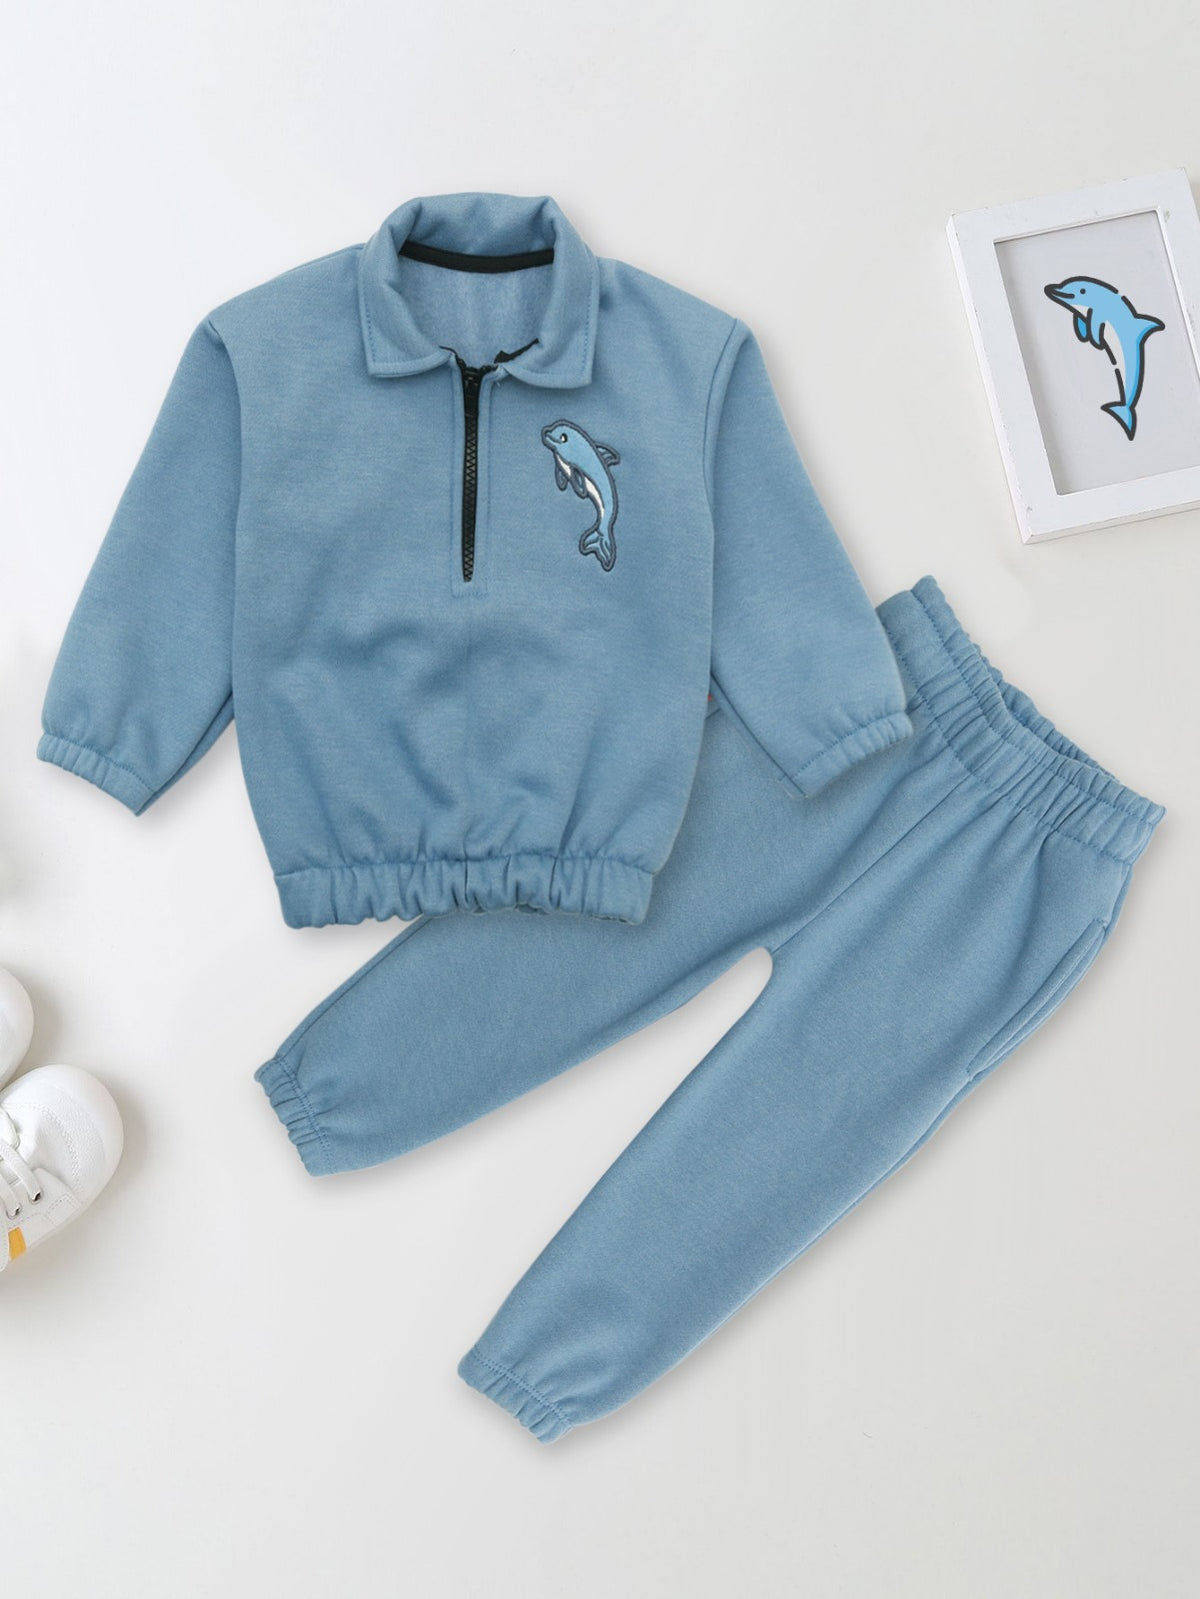 Embroidery Fleece Sweatshirt with Sweatpants - Dolphin - Blue - Kids Wear 2 Pc Set